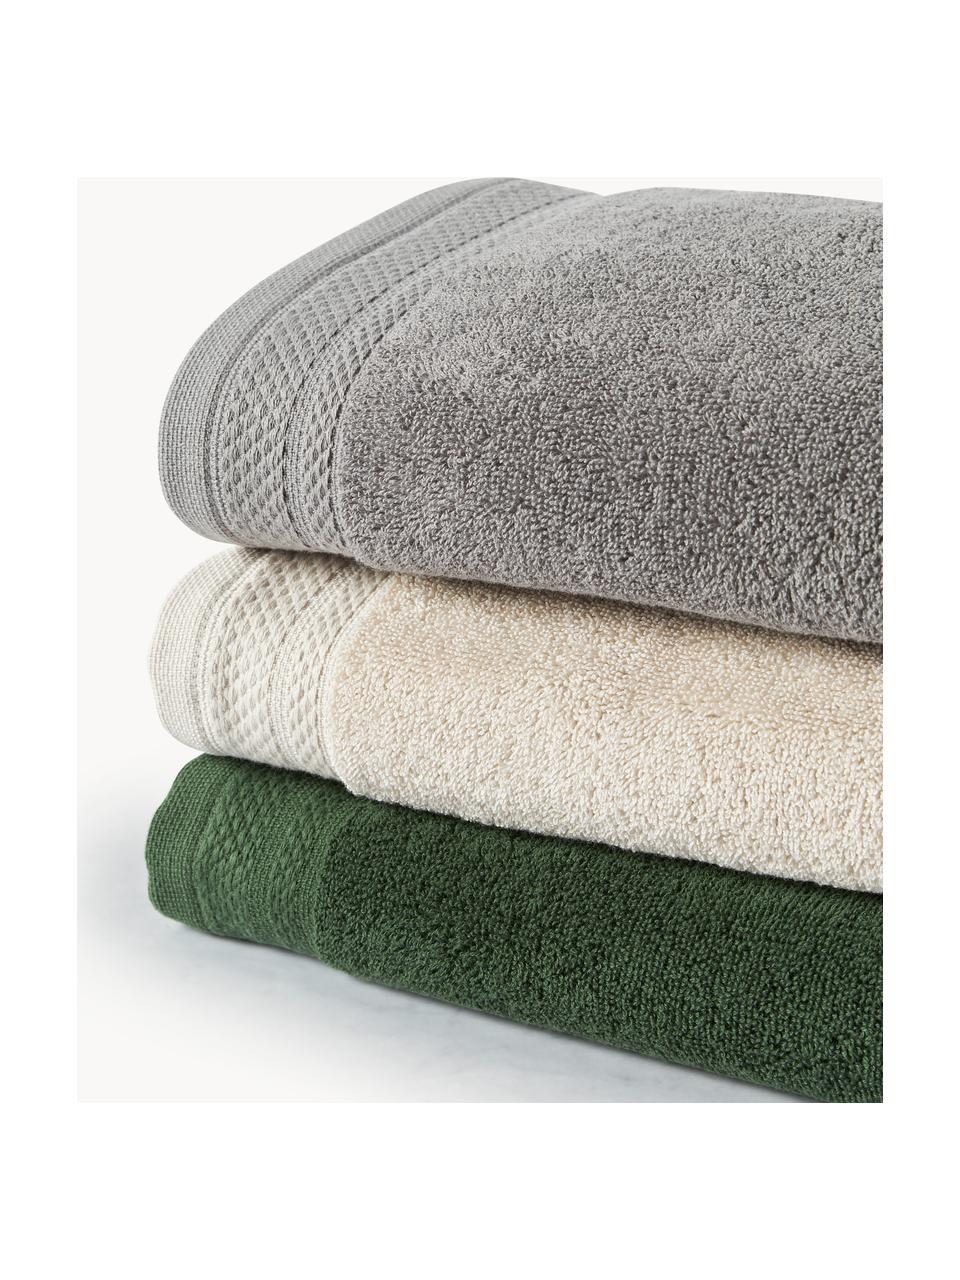 Sada ručníků z organické bavlny Premium, různé velikosti sady, 100 % bio bavlna, s certifikátem GOTS (certifikováno GCL International, GCL-300517)
Vysoká gramáž, 600 g/m², Tmavě šedá, 4dílná sada (ručník a osuška)